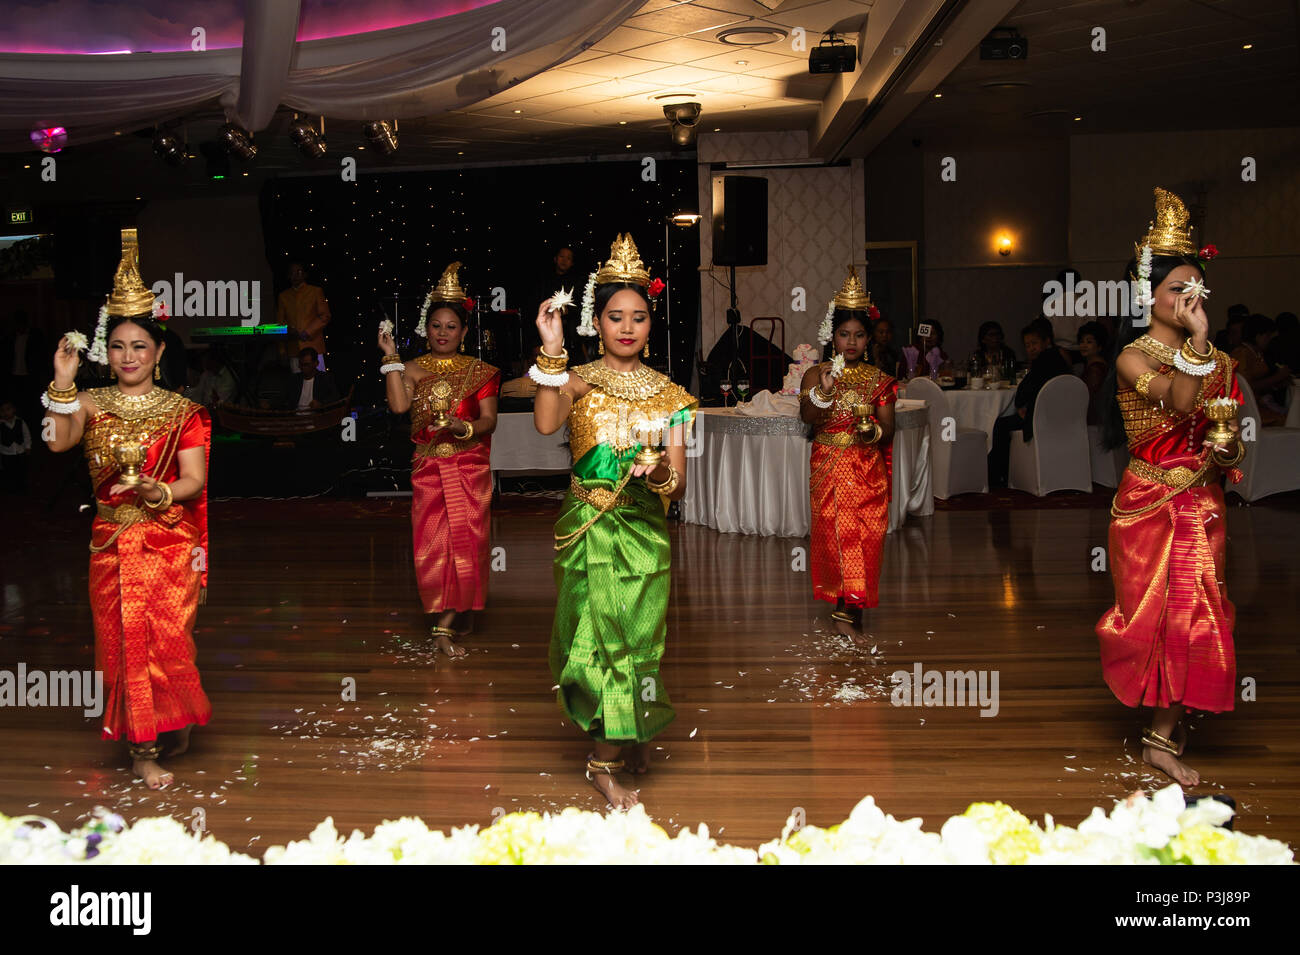 Danse de mariage, Sydney, Australie 20 Avril 2014 : Les femmes La danse une danse traditionnelle cambodgienne appelée la danse de Chuon Por (danse) qui souhaitent en K traditionnel Banque D'Images